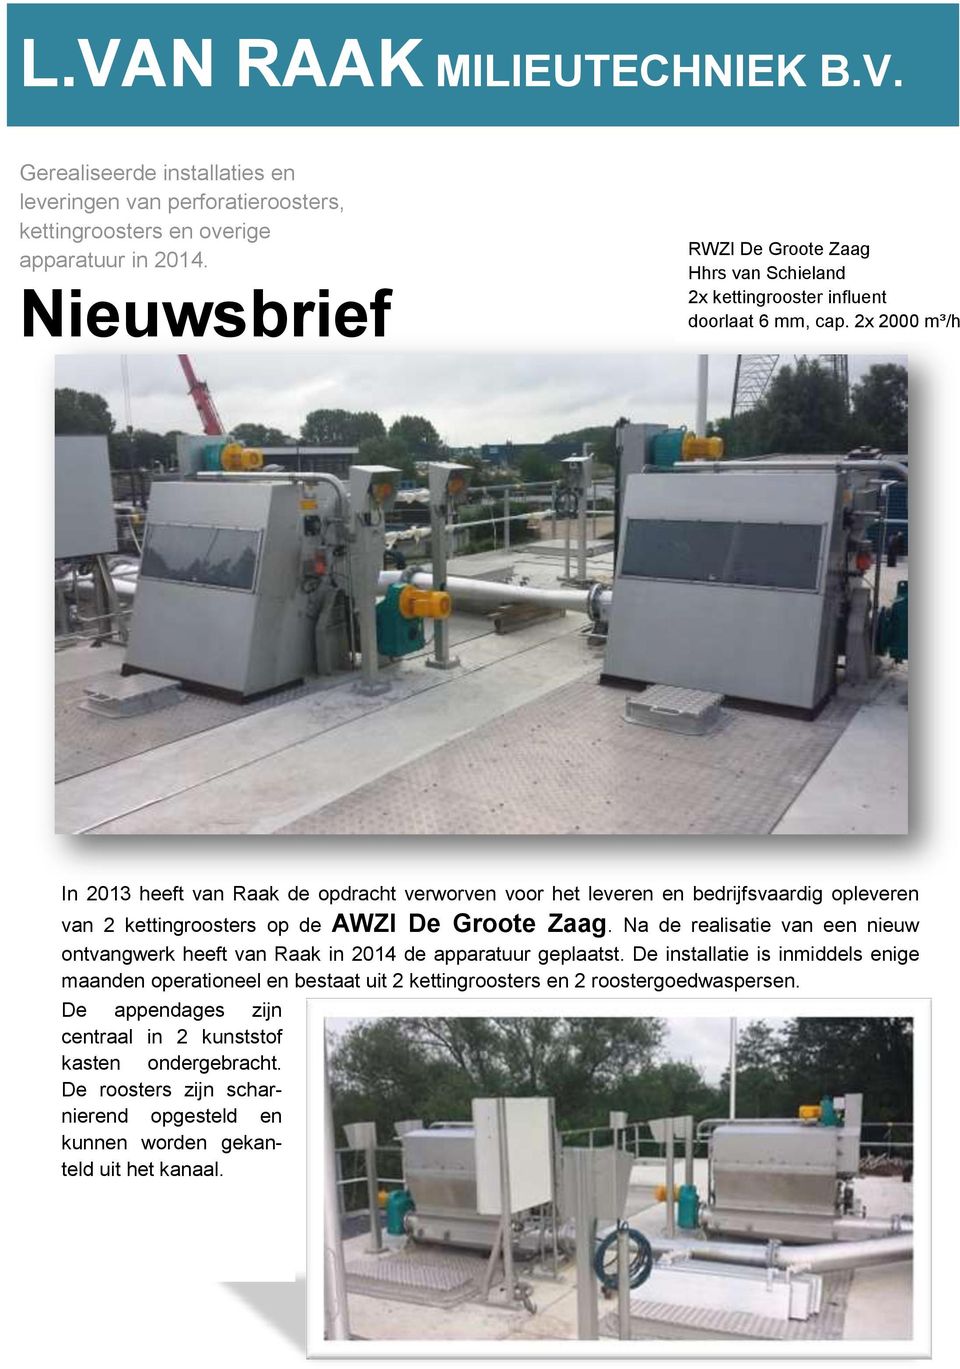 2x 2000 m³/h In 2013 heeft van Raak de opdracht verworven voor het leveren en bedrijfsvaardig opleveren van 2 kettingroosters op de AWZI De Groote Zaag.